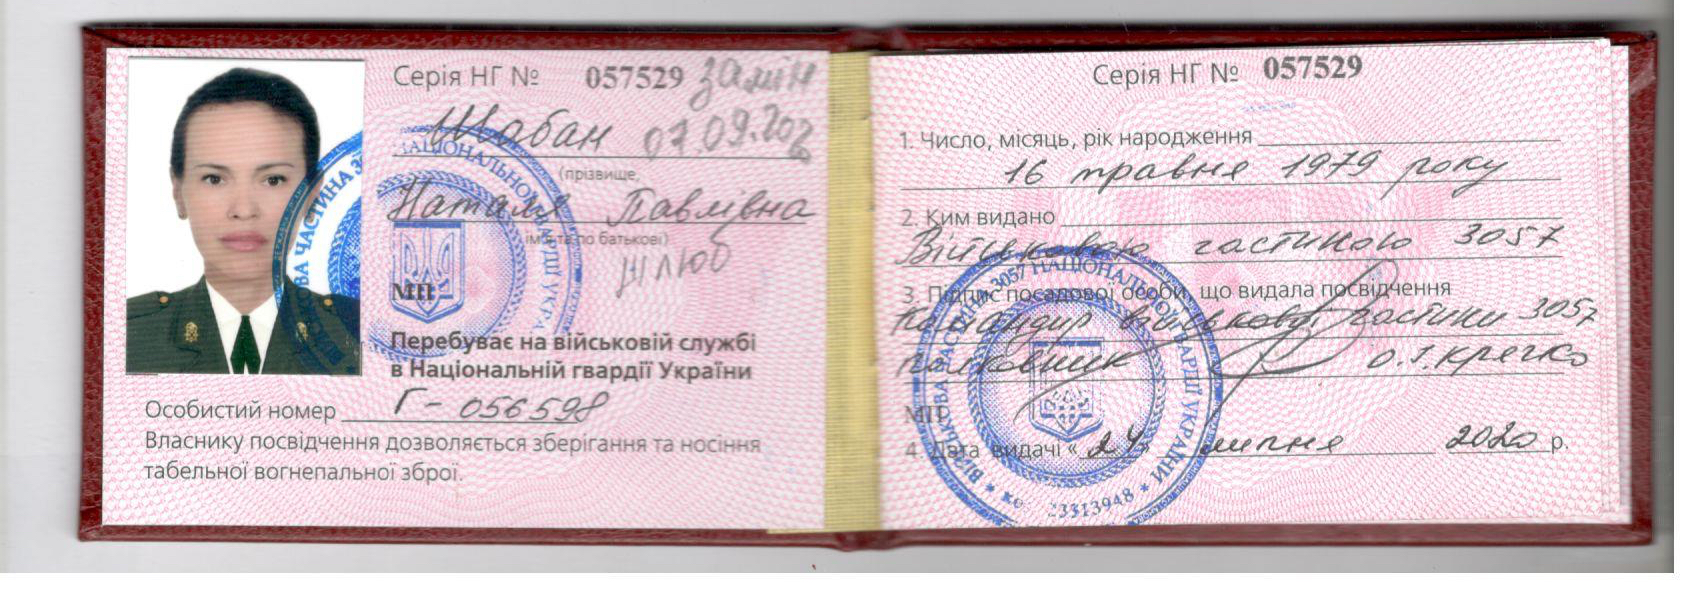 Служебное удостоверение Натальи Шабан, опубликованное на сайте «Немезида» 13 апреля 2022 года